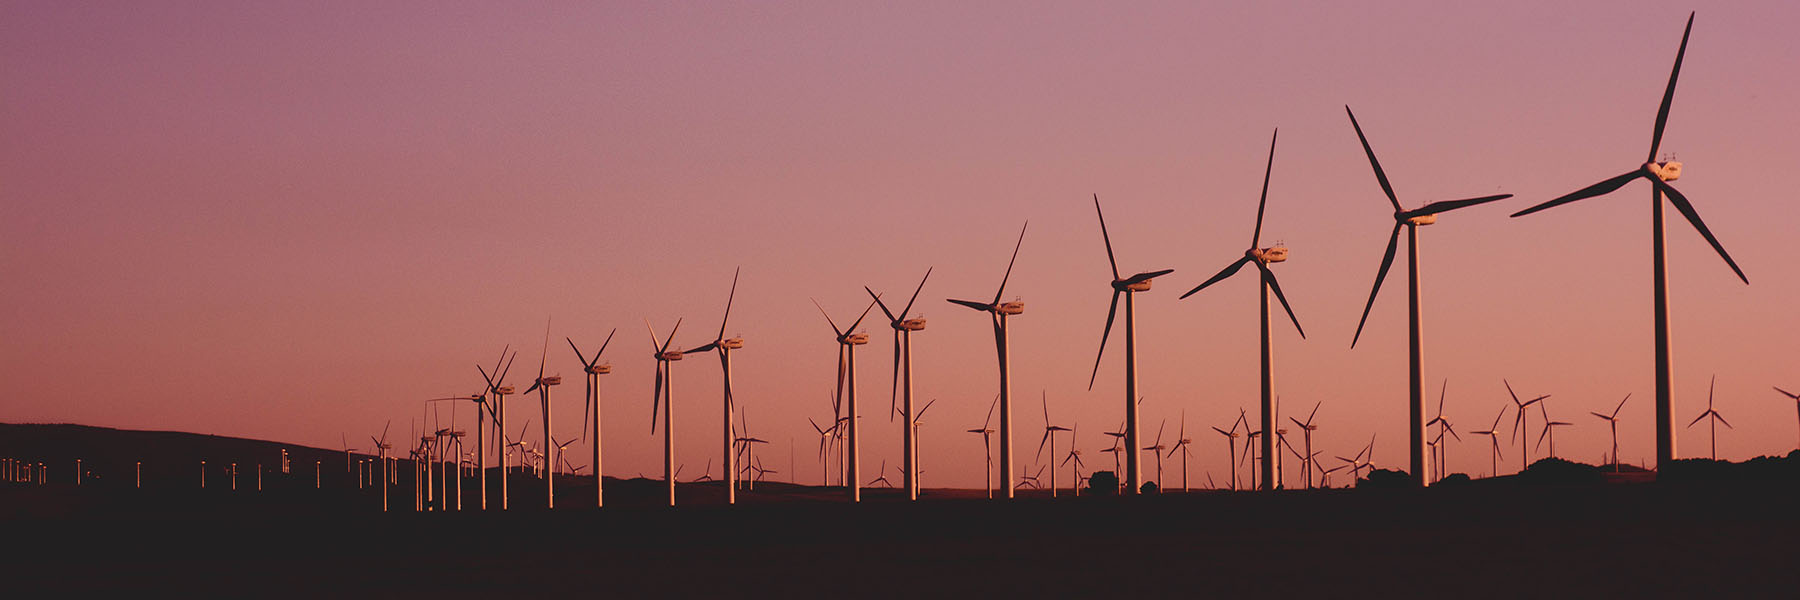 Wind turbines at twilight